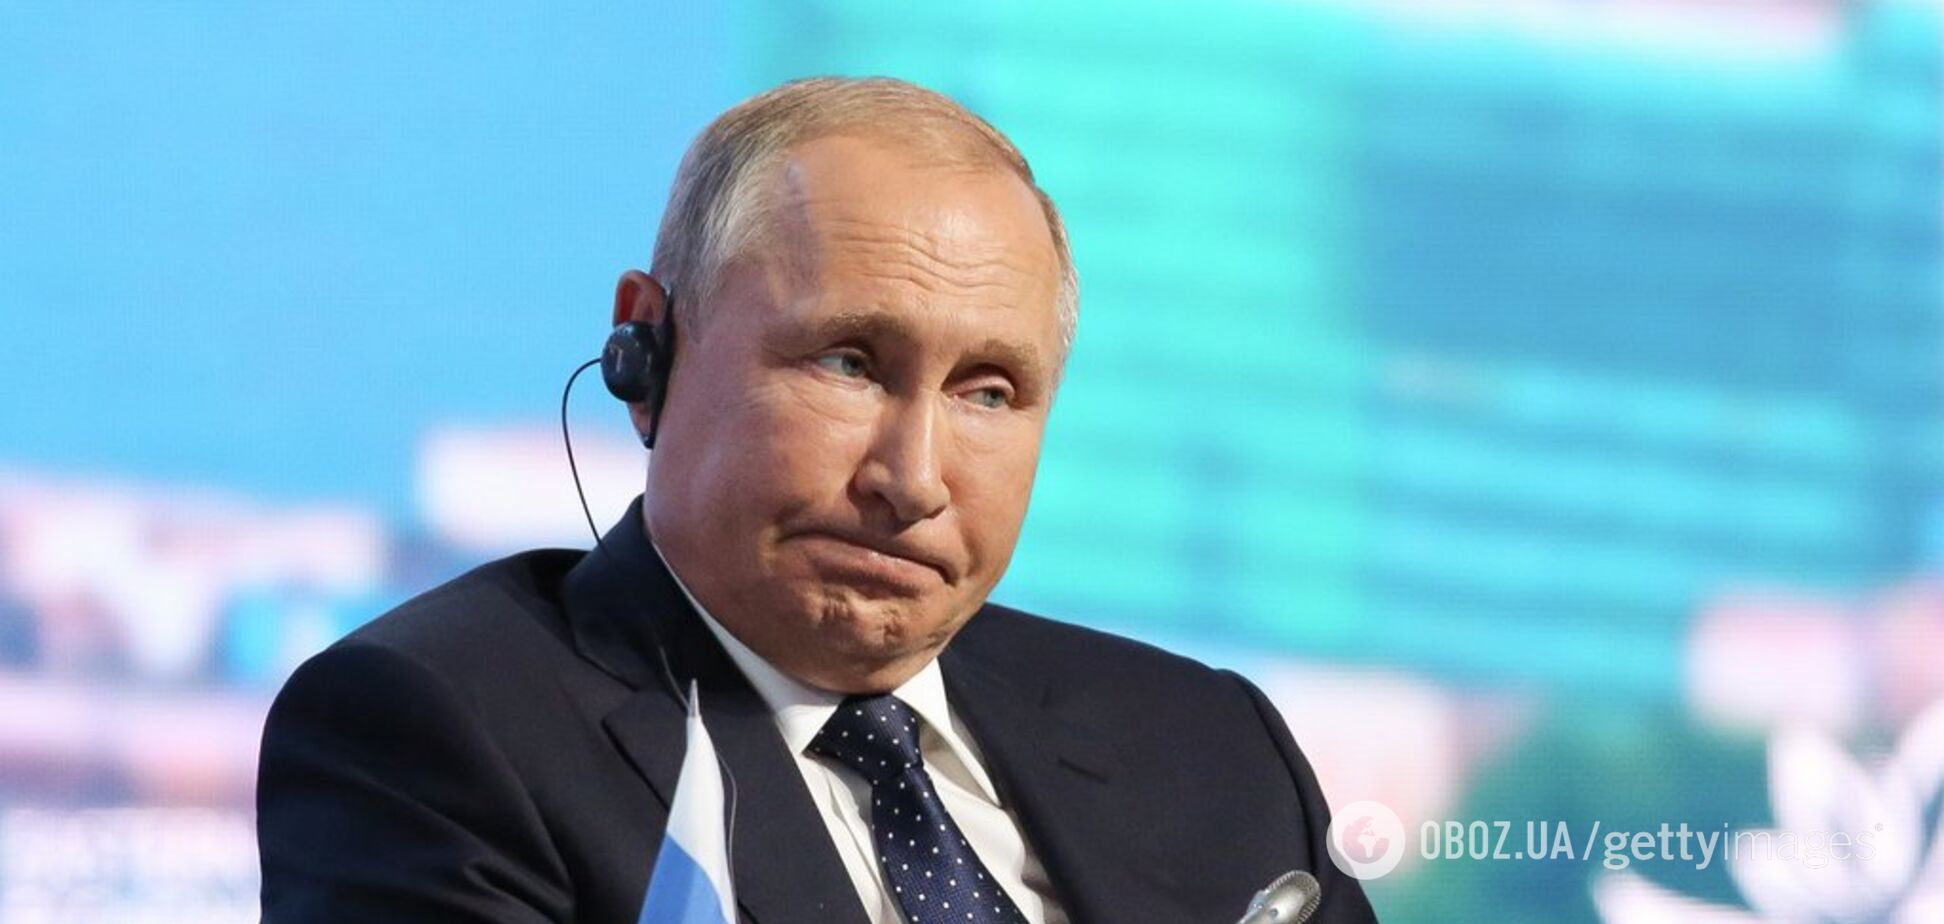 'Дедуля в маразме': в сети возмутились заявлением Путина о русском языке